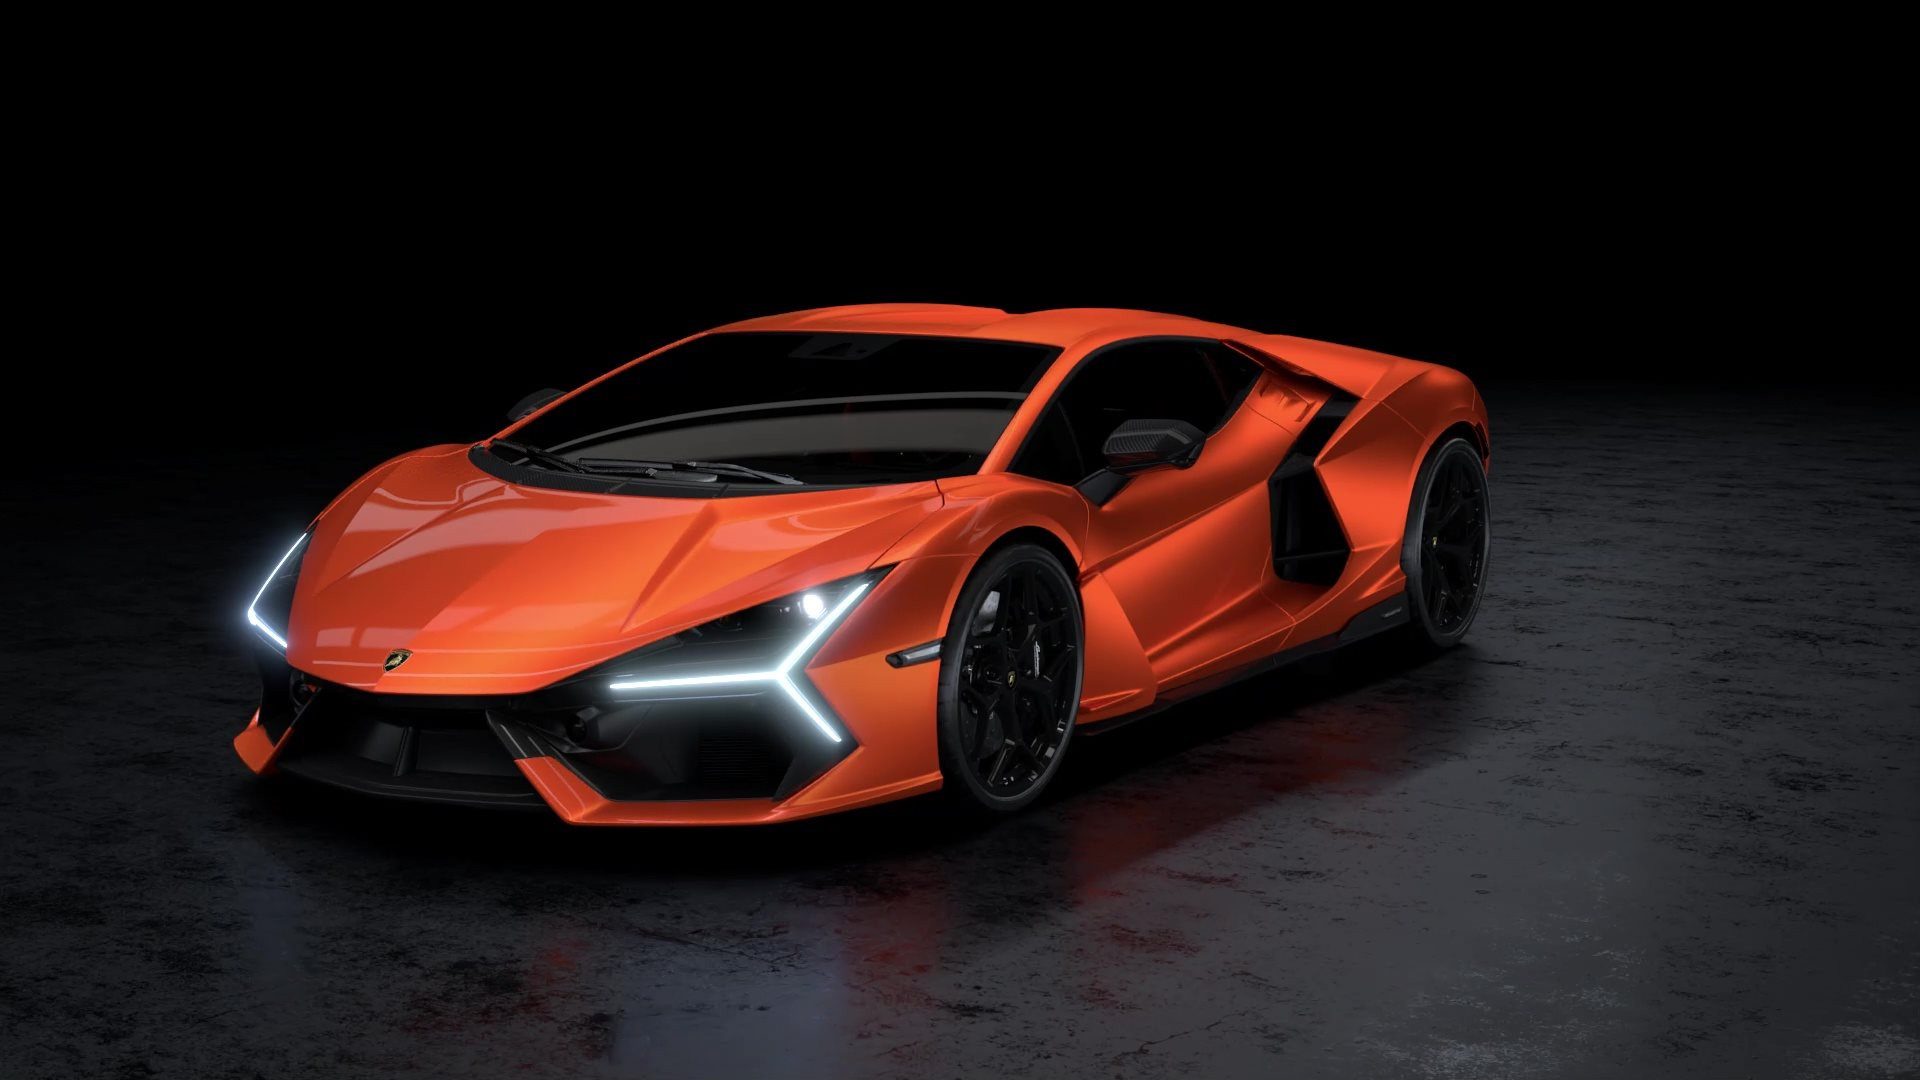 Siêu xe 21 tỷ đồng của Lamborghini có gì hot mà cháy hàng đến hết năm 2025, người giàu đến mấy cũng phải tranh nhau xếp hàng? - Ảnh 1.